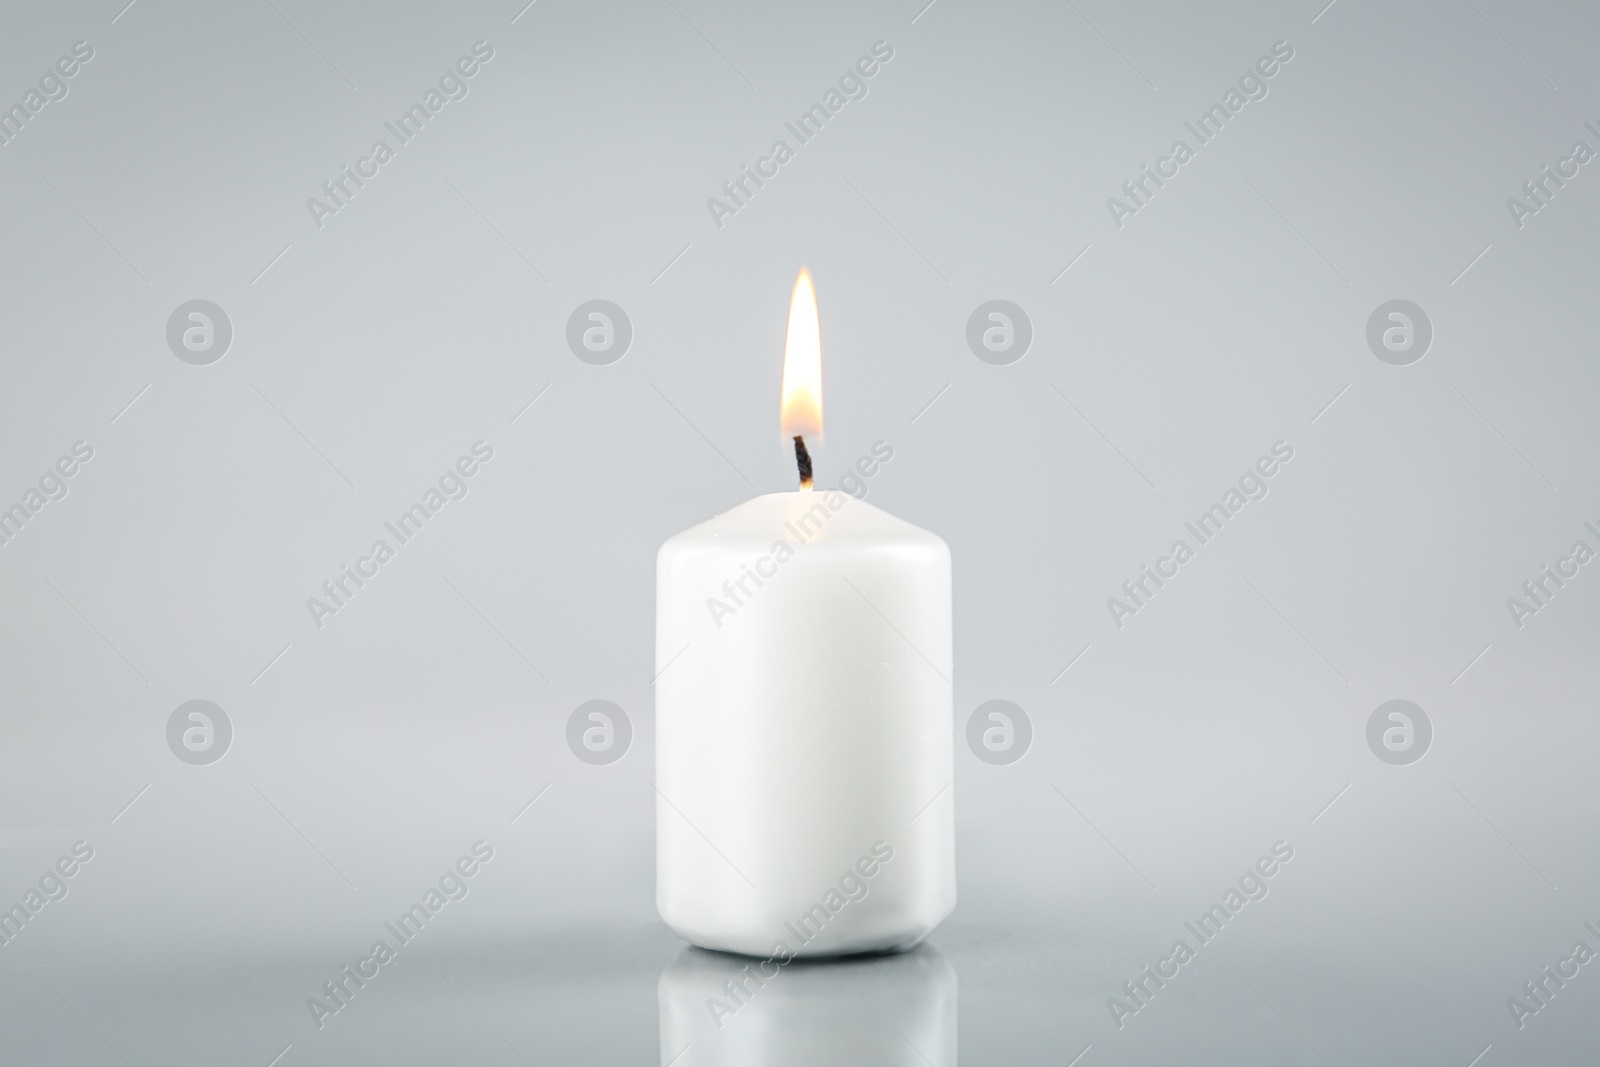 Photo of Burning white candle on light grey background